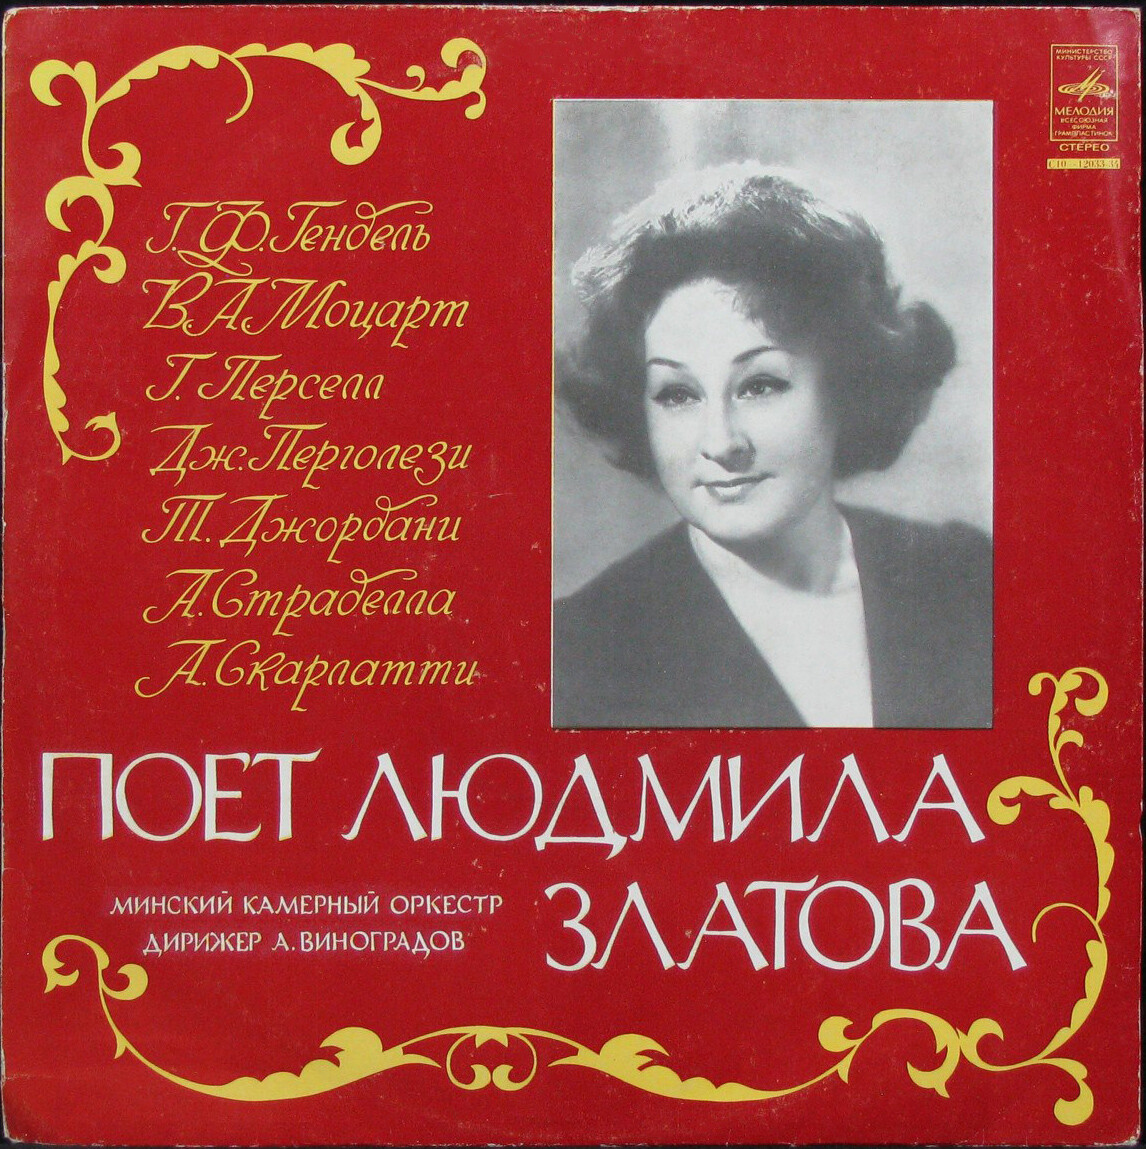 Поёт Людмила Златова (сопрано)